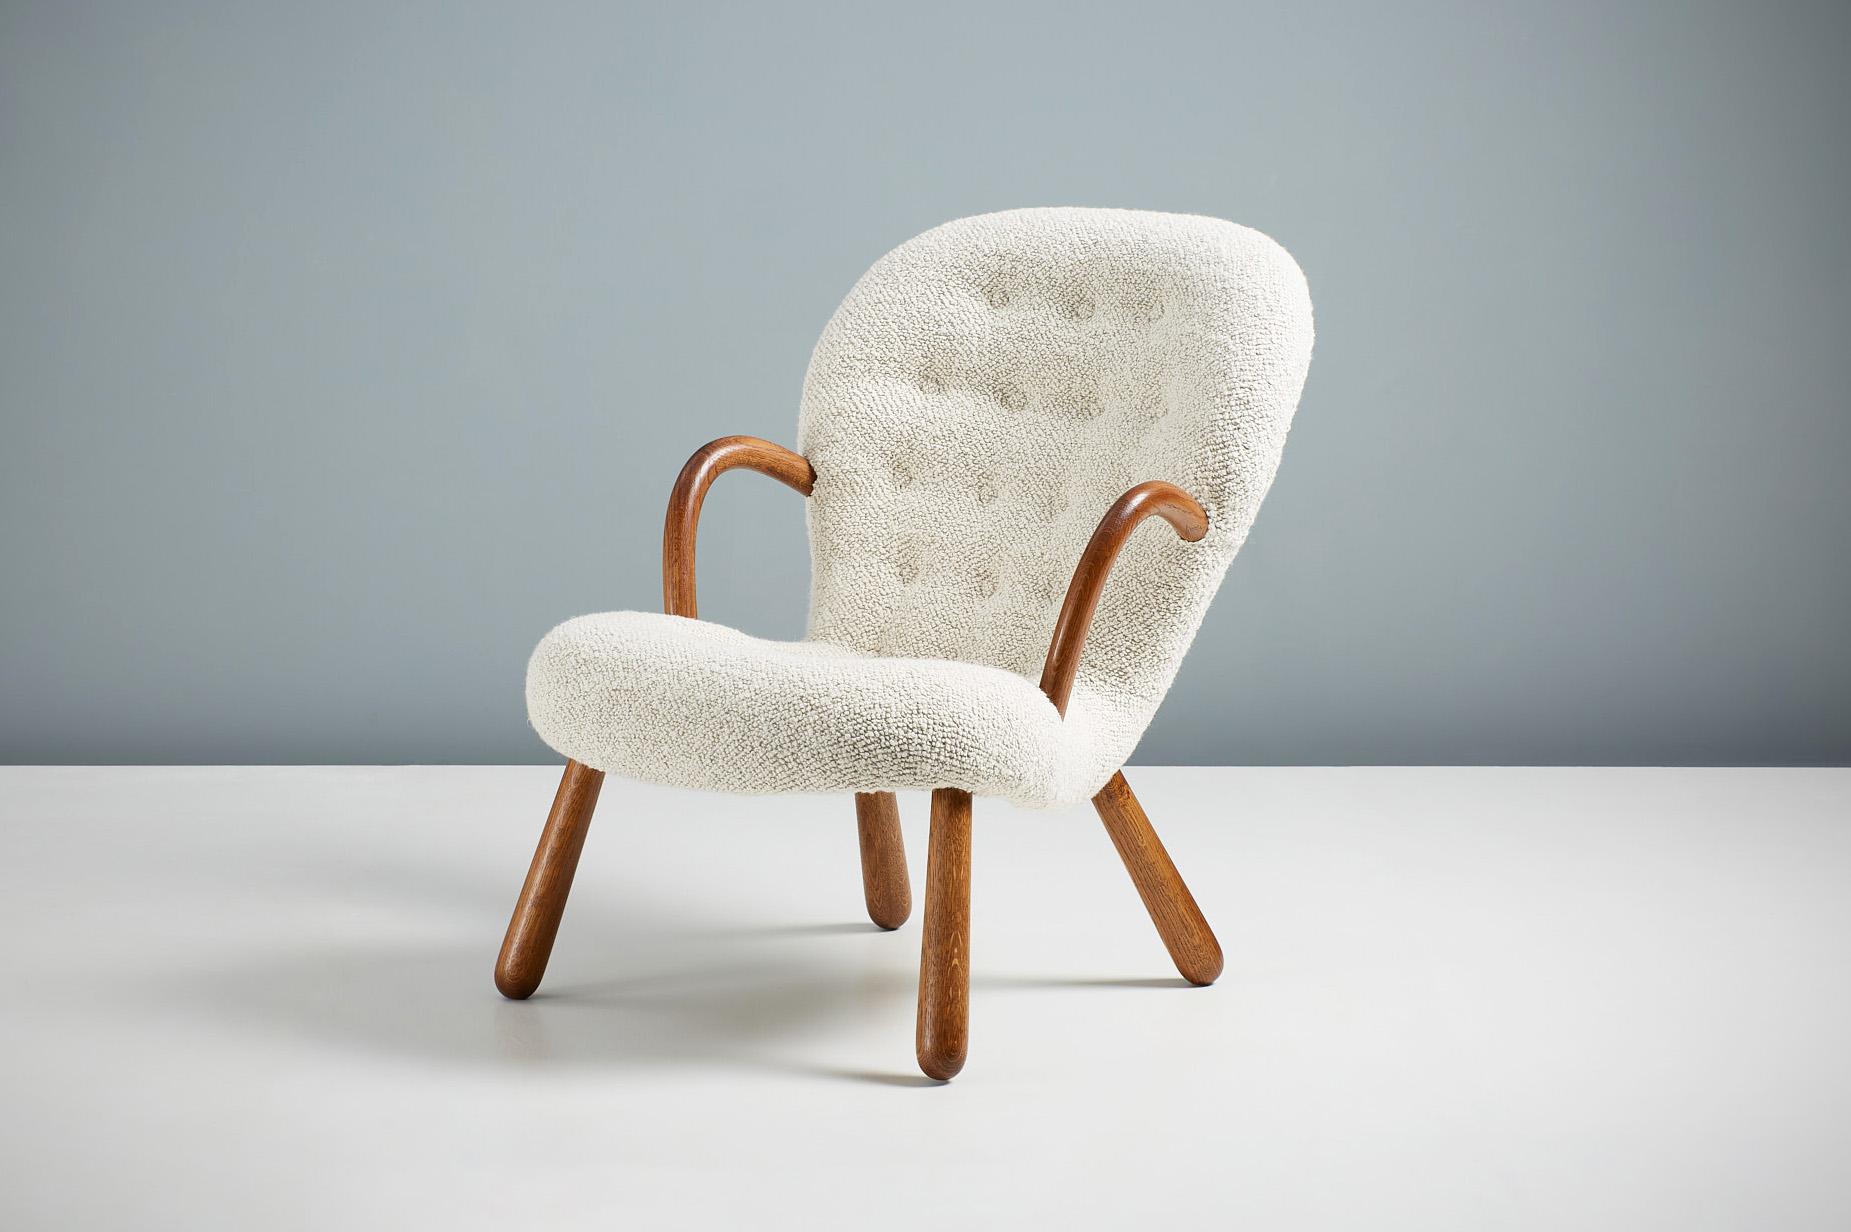 Réédition officielle de l'emblématique Clam Chair d'Arnold Madsen.

Dagmar, en collaboration avec la succession d'Arnold Madsen, est fière de relancer la Clam Chair, l'un des meubles scandinaves les plus appréciés et les plus recherchés du XXe